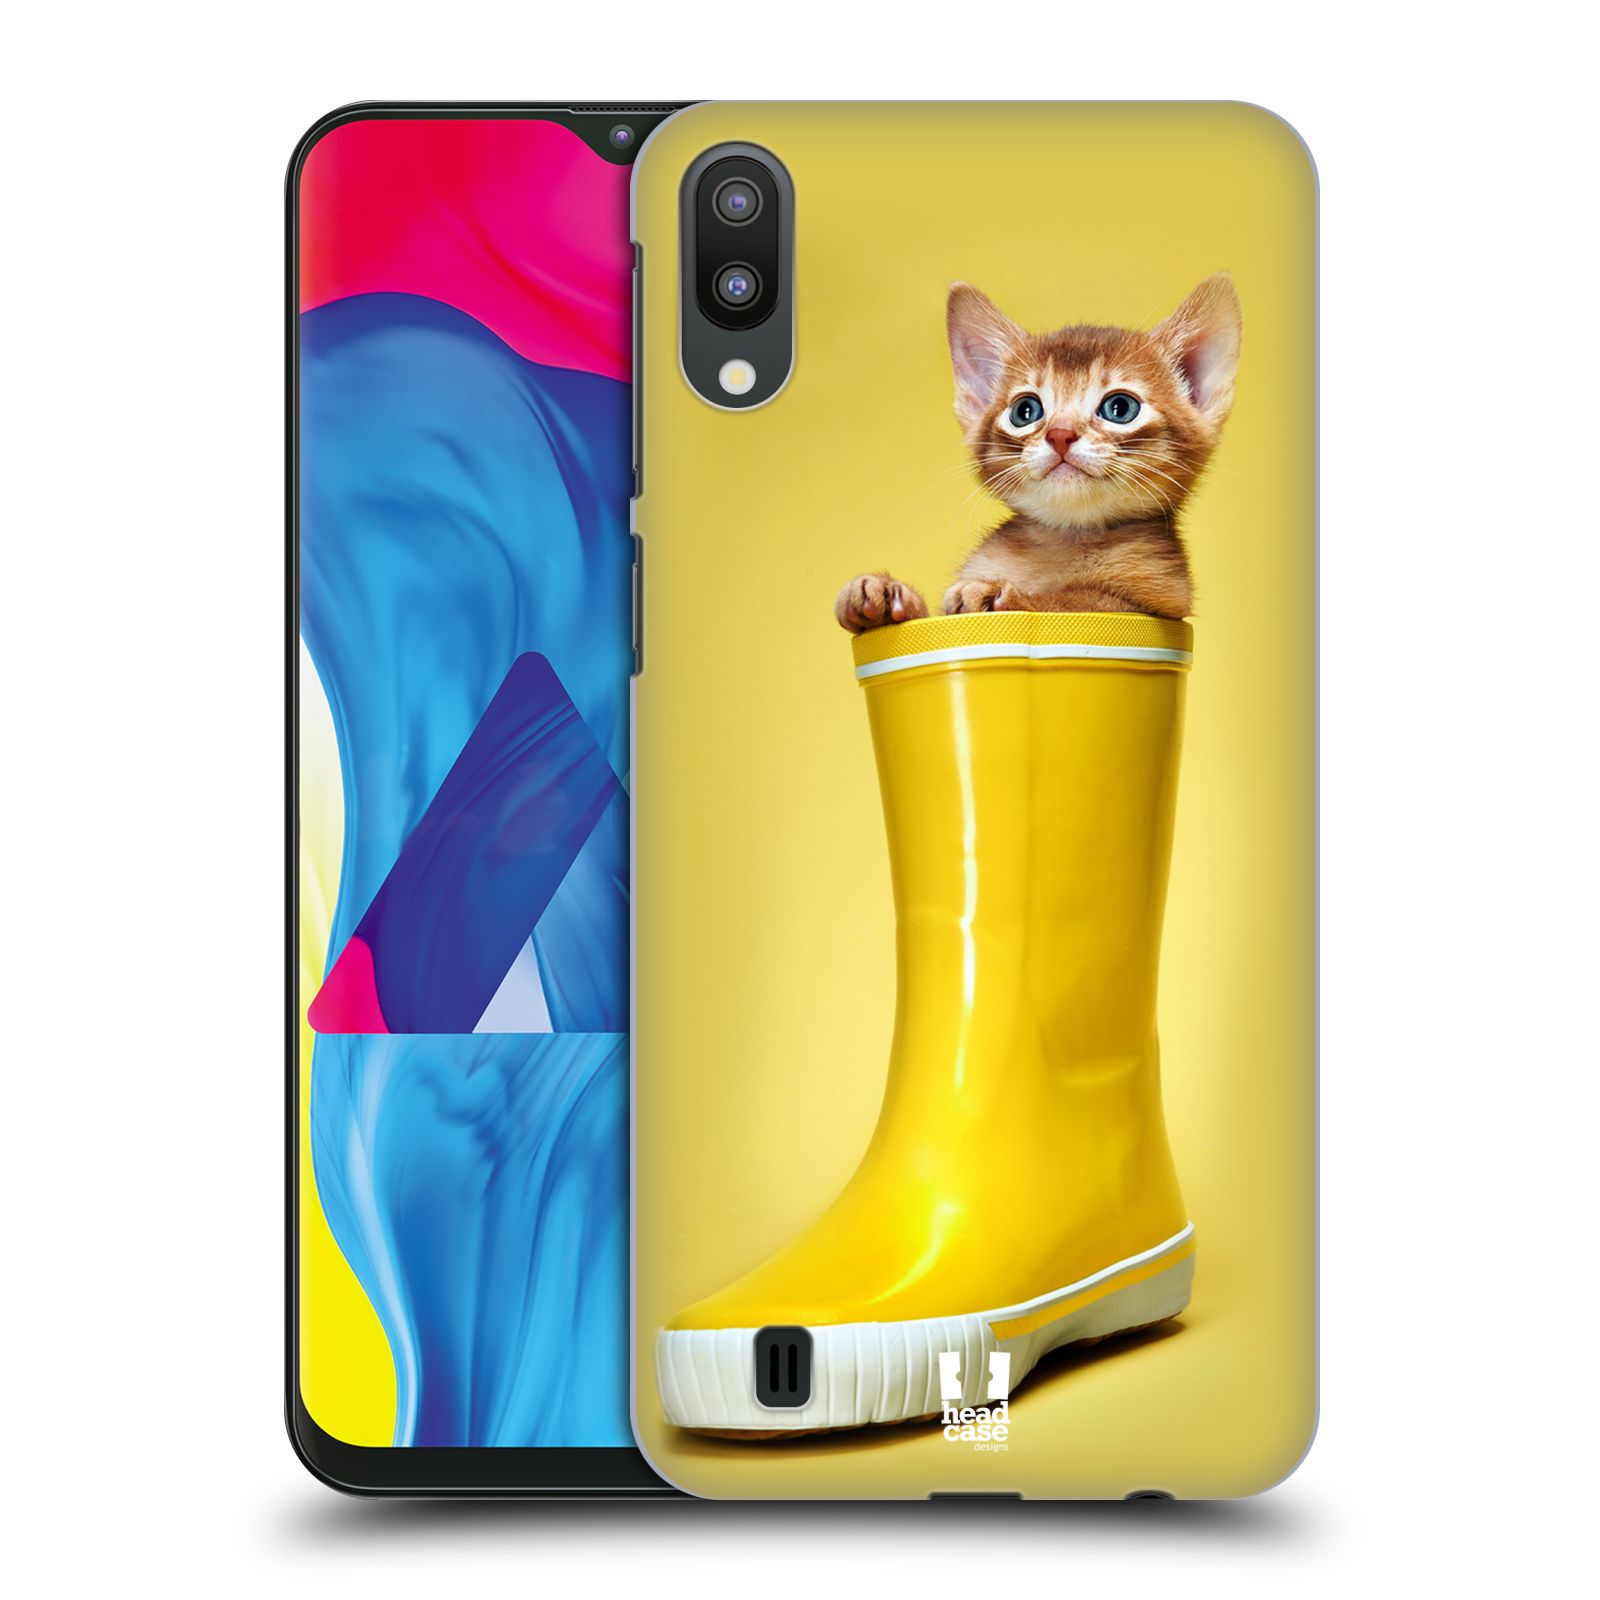 Plastový obal HEAD CASE na mobil Samsung Galaxy M10 vzor Legrační zvířátka kotě v botě žlutá